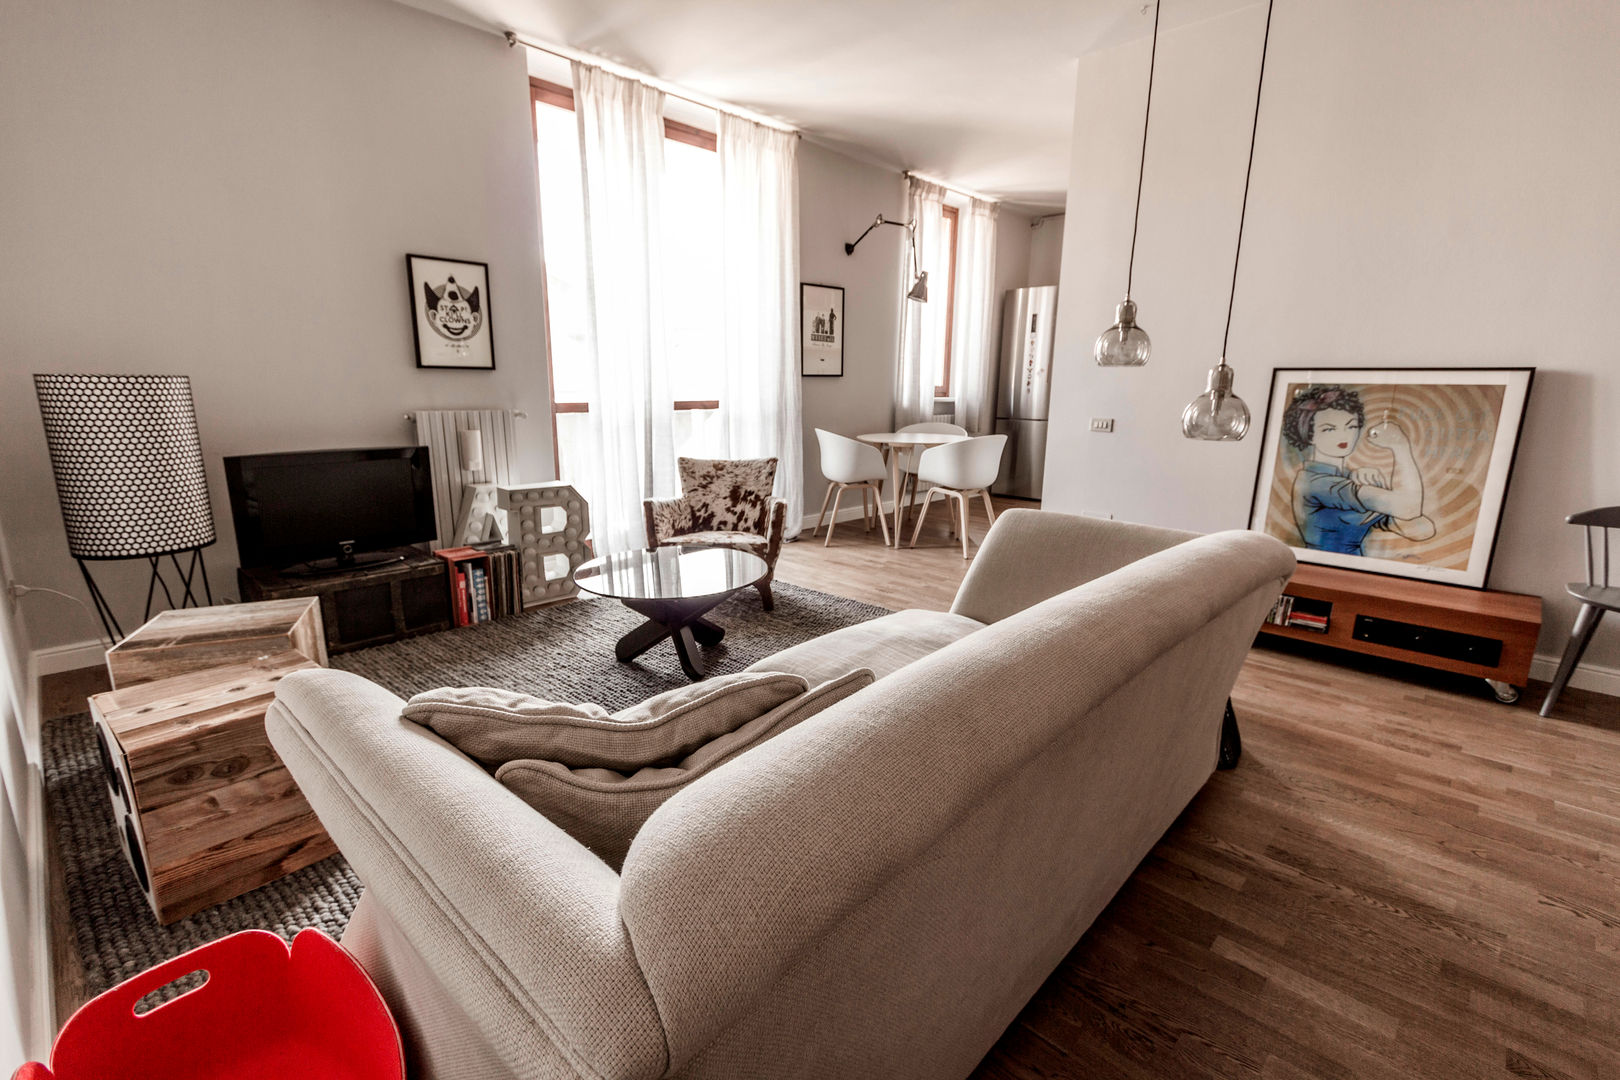 Appartamento Residenziale - Brianza 2014, Galleria del Vento Galleria del Vento Scandinavian style living room